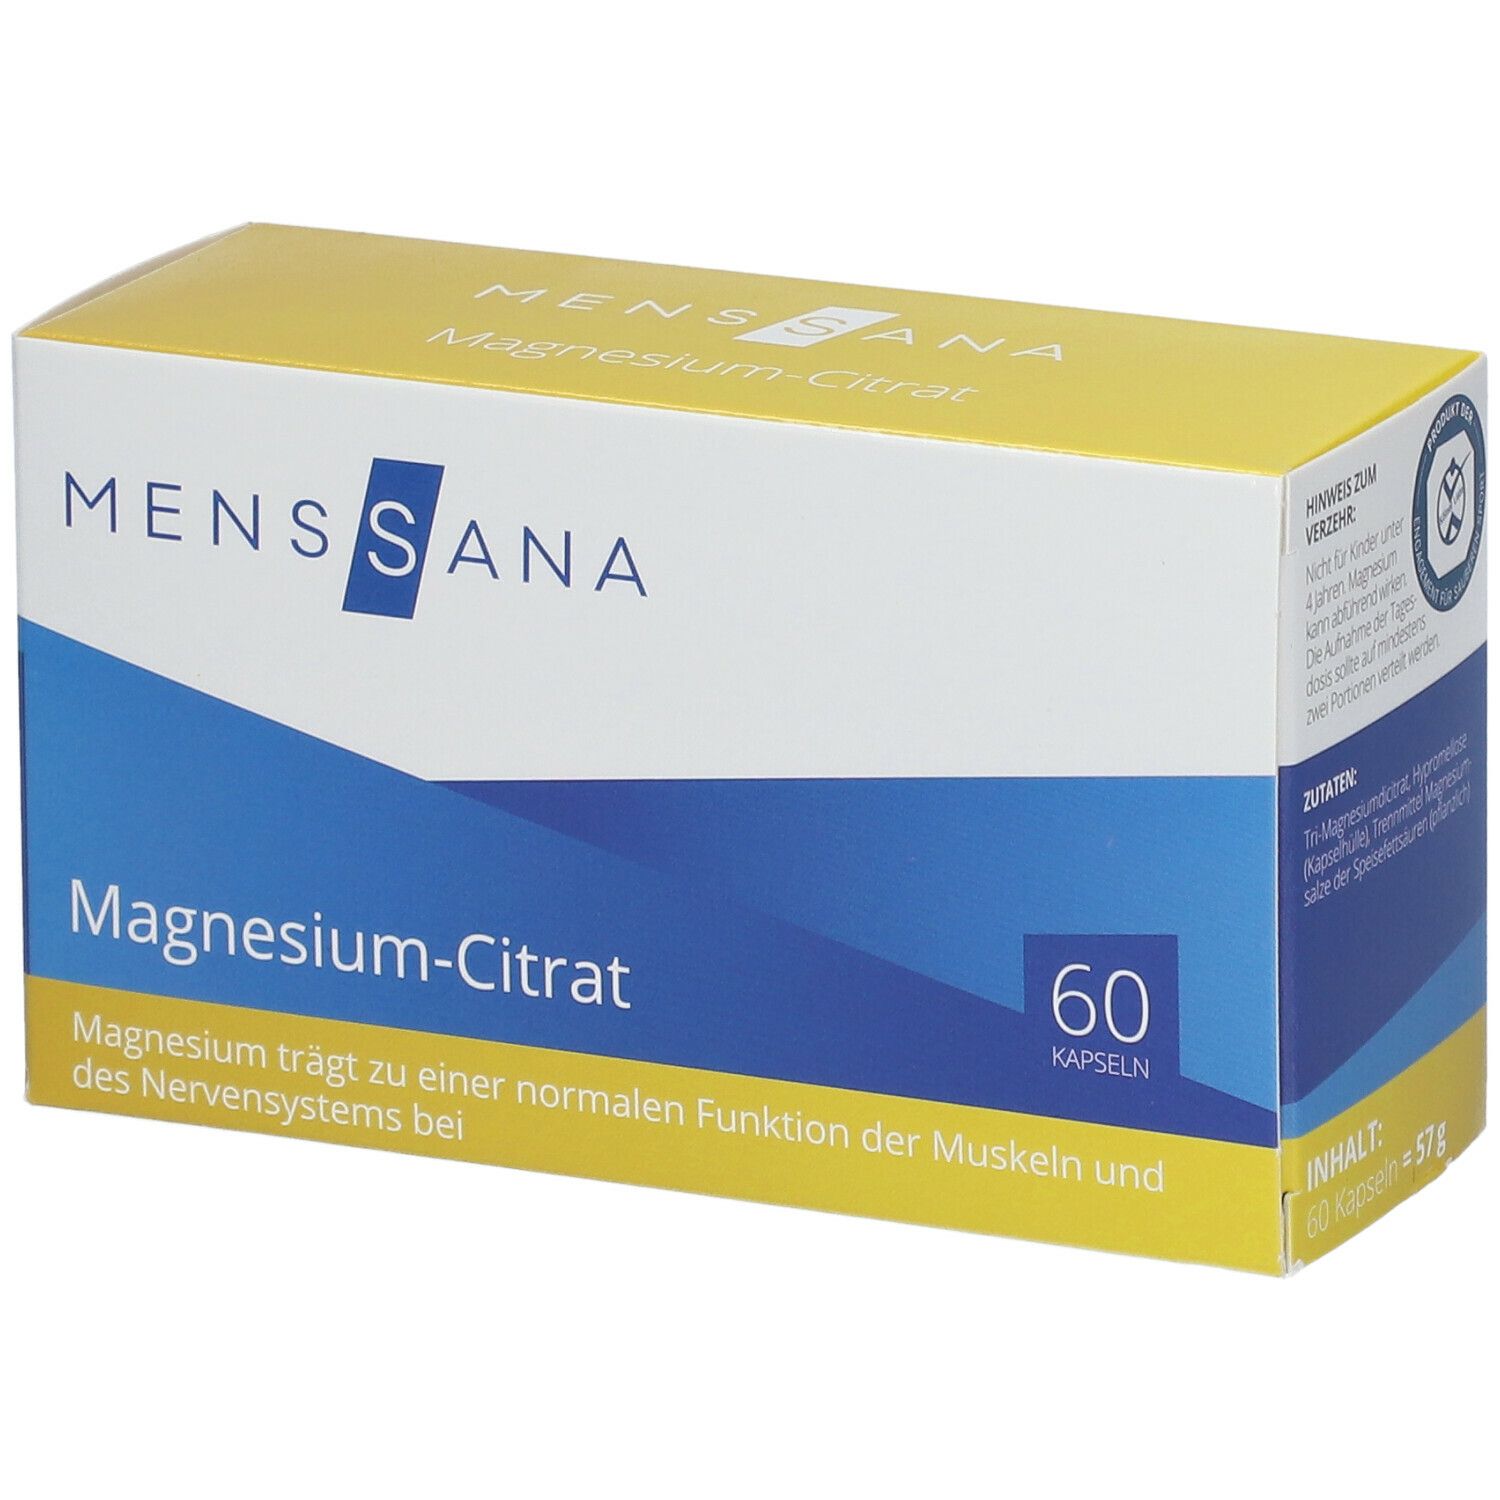 Image of MensSana Magnesium-Citrat